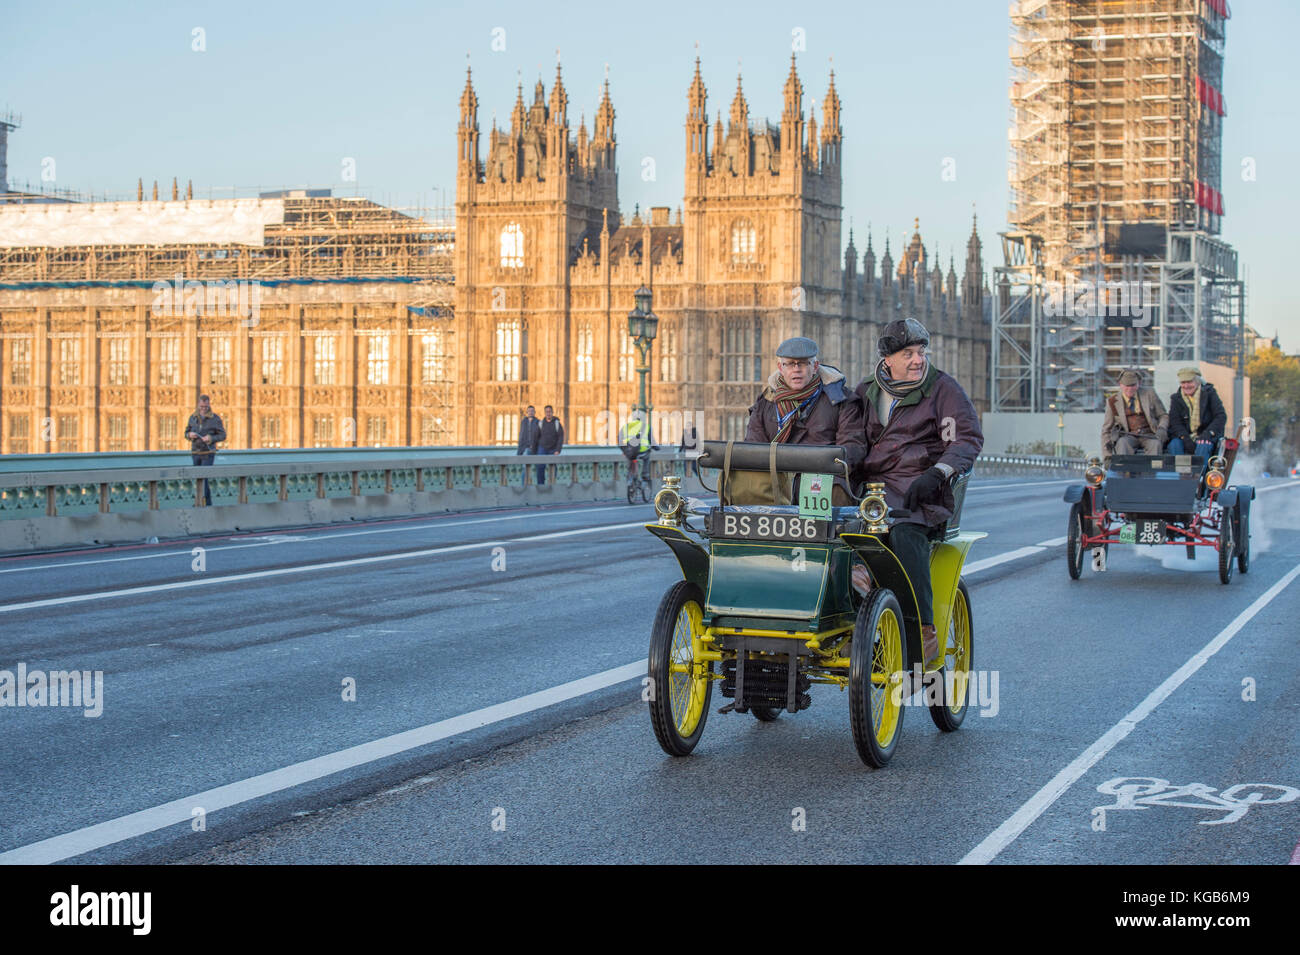 5 novembre 2017. Bonhams de Londres à Brighton, le plus long événement automobile au monde, le 1902 Rochet sur le pont de Westminster. Banque D'Images